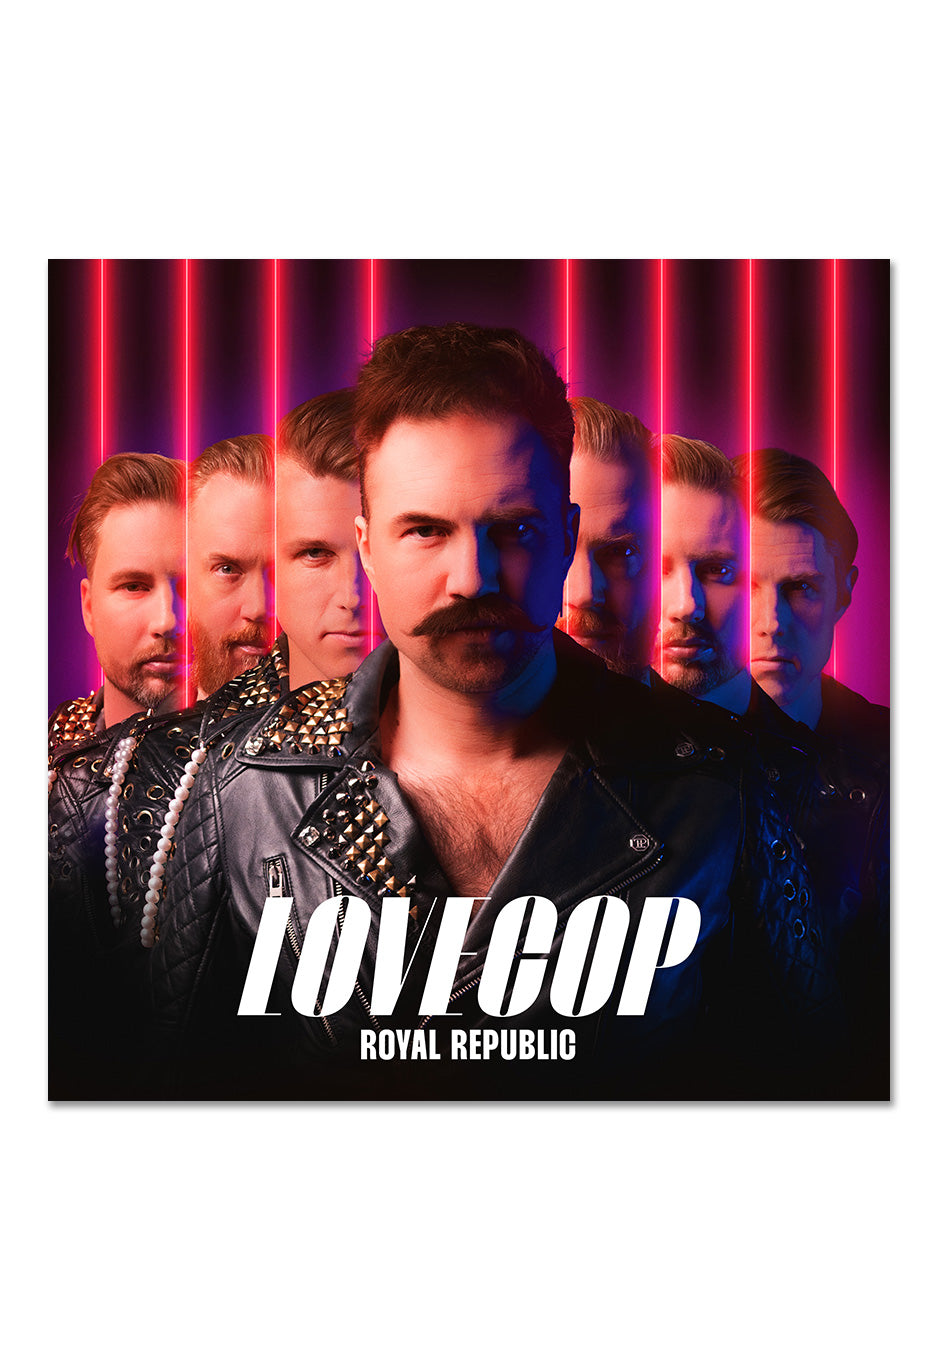 Royal Republic - LoveCop - Digipak CD